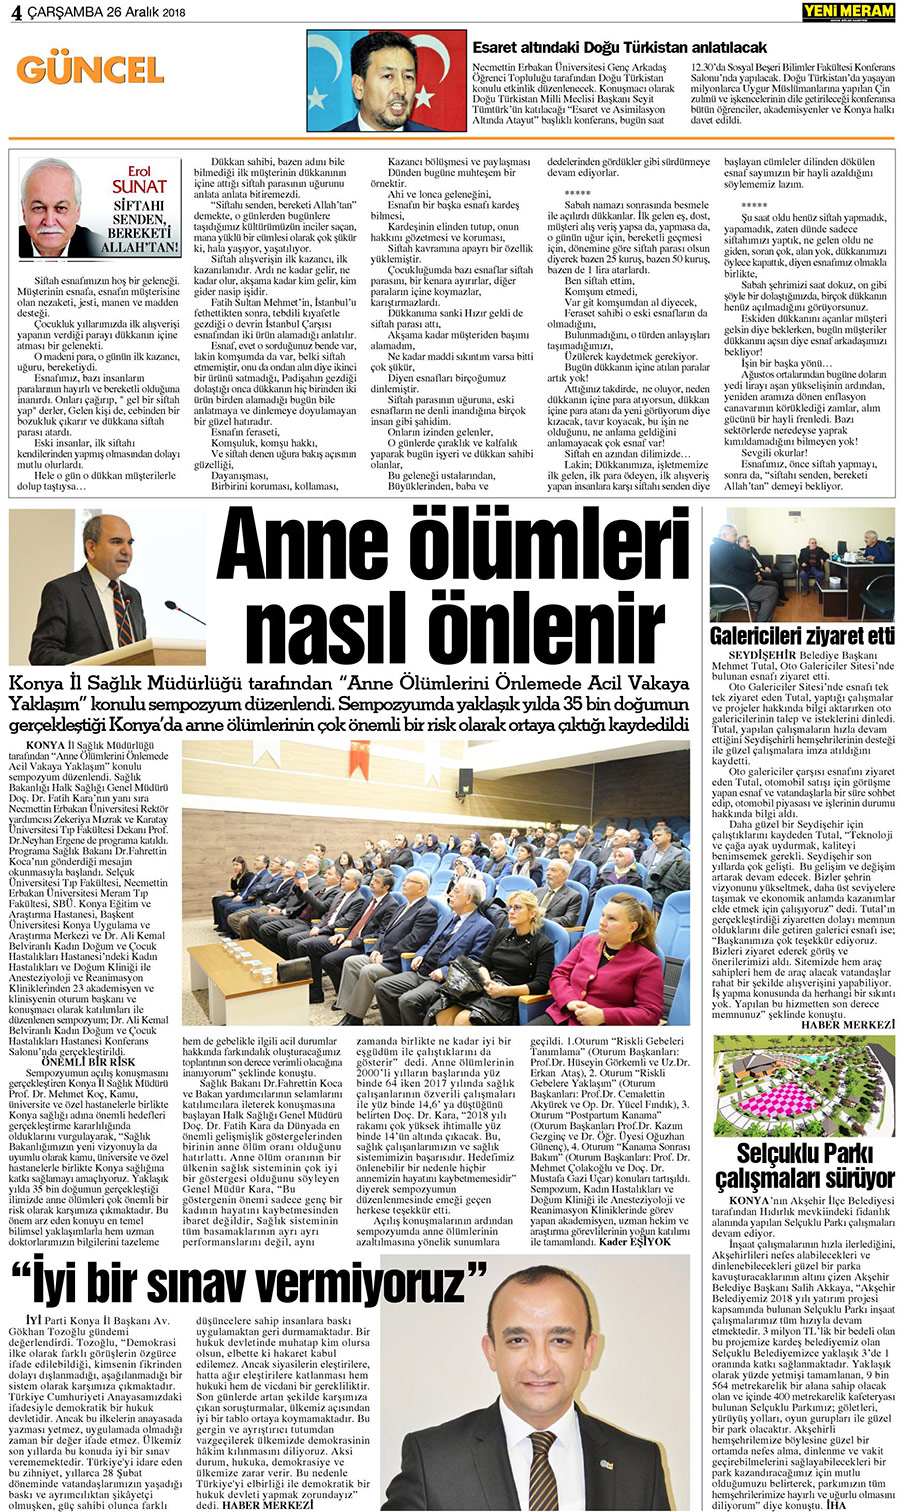 26 Aralık 2018 Yeni Meram Gazetesi